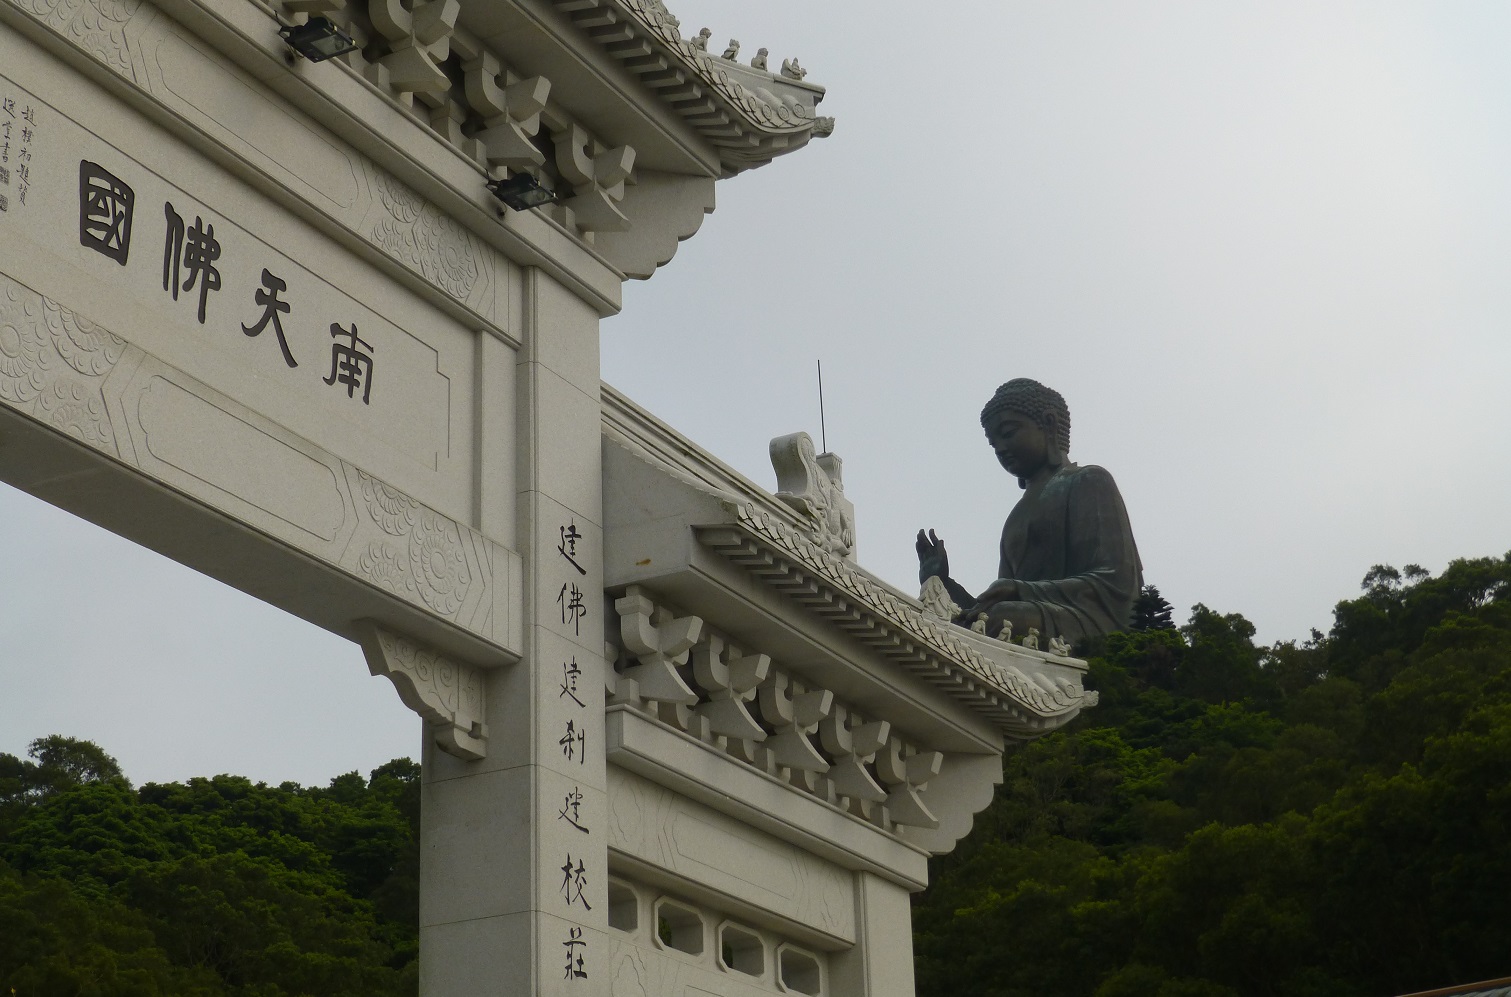 川崎駅 レイアウト製作日誌 香港の旅 4 天壇大仏を見学